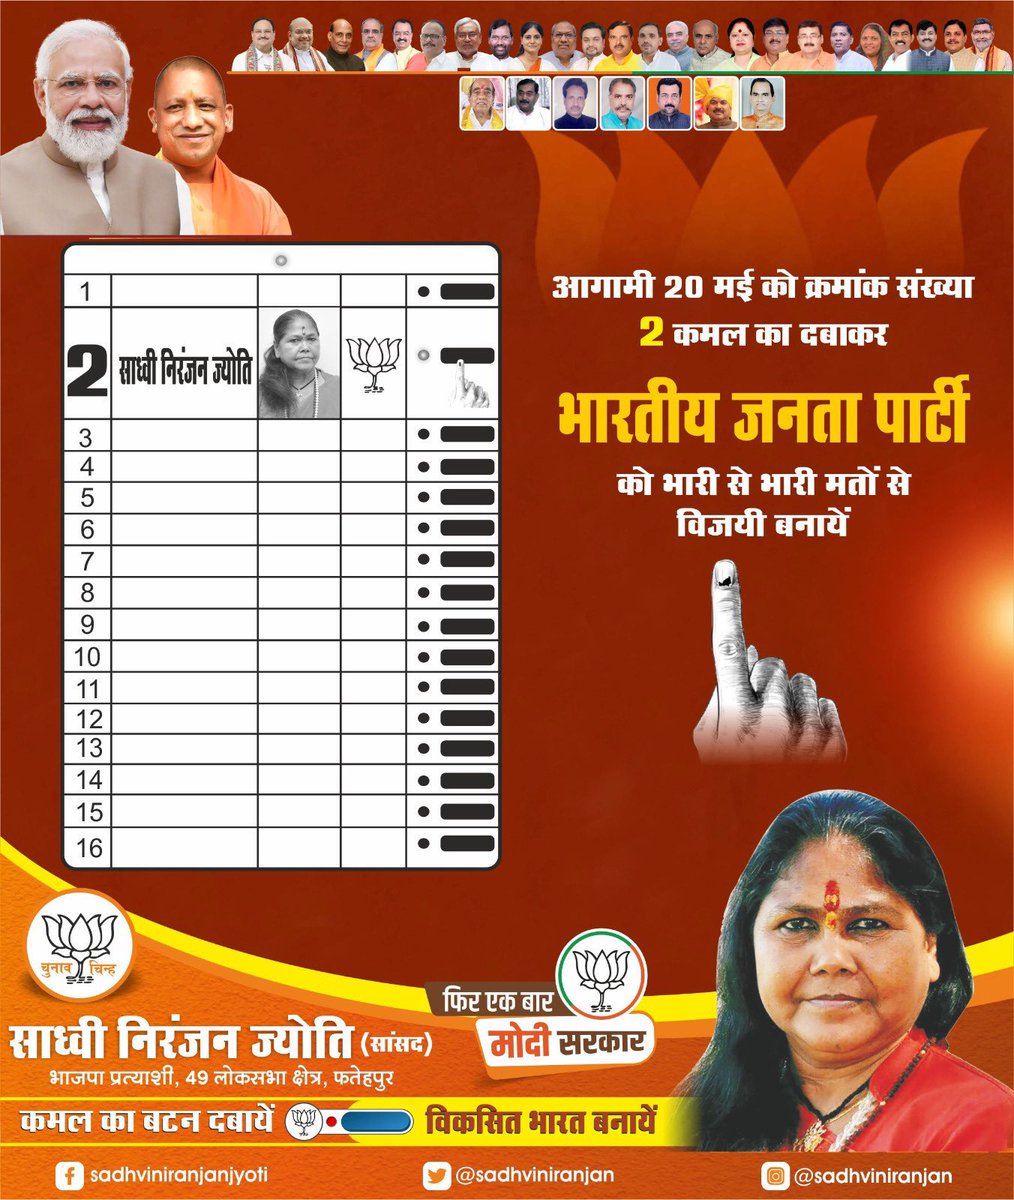 गृह जिले #फतेहपुर के मतदाताओं से अनुरोध है कि कल 20 मई के दिन 49 फतेहपुर लोकसभा संसदीय क्षेत्र से भाजपा प्रत्याशी साध्वी निरंजन ज्योति जी के सामने कमल का बटन दबाकर उन्हें भारी बहुमत से विजयी बनाएं। आपका एक वोट मोदी जी कऔर राष्ट्र को और अधिक सशक्त करेगा। @SadhviNiranjan